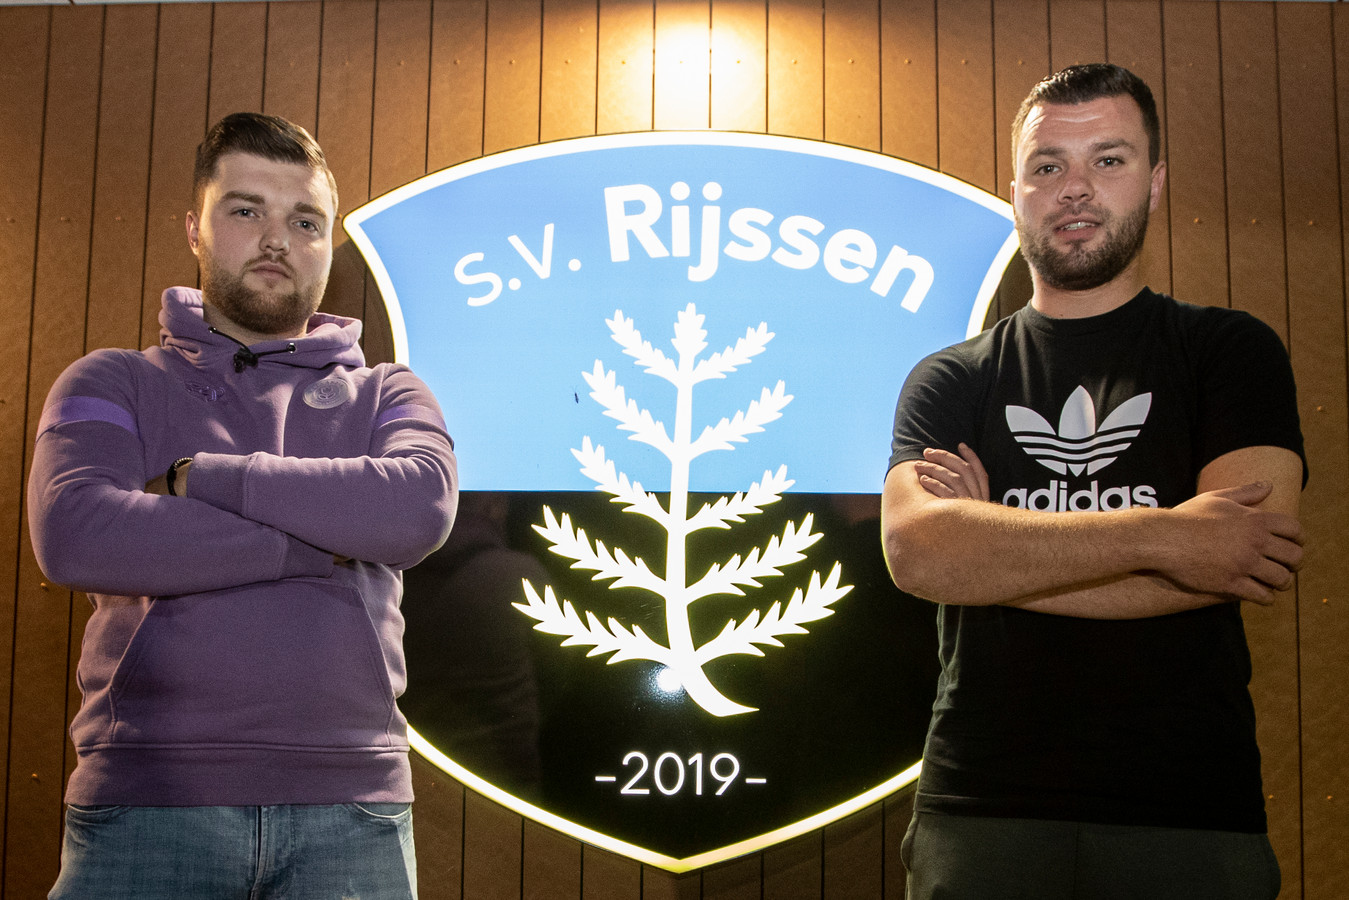 Niek (links) en Frank (rechts) Averesch speelden in het verleden voor Excelsior’31 en AGOVV. Sinds dit seizoen zijn de broertjes speler van SV Rijssen.